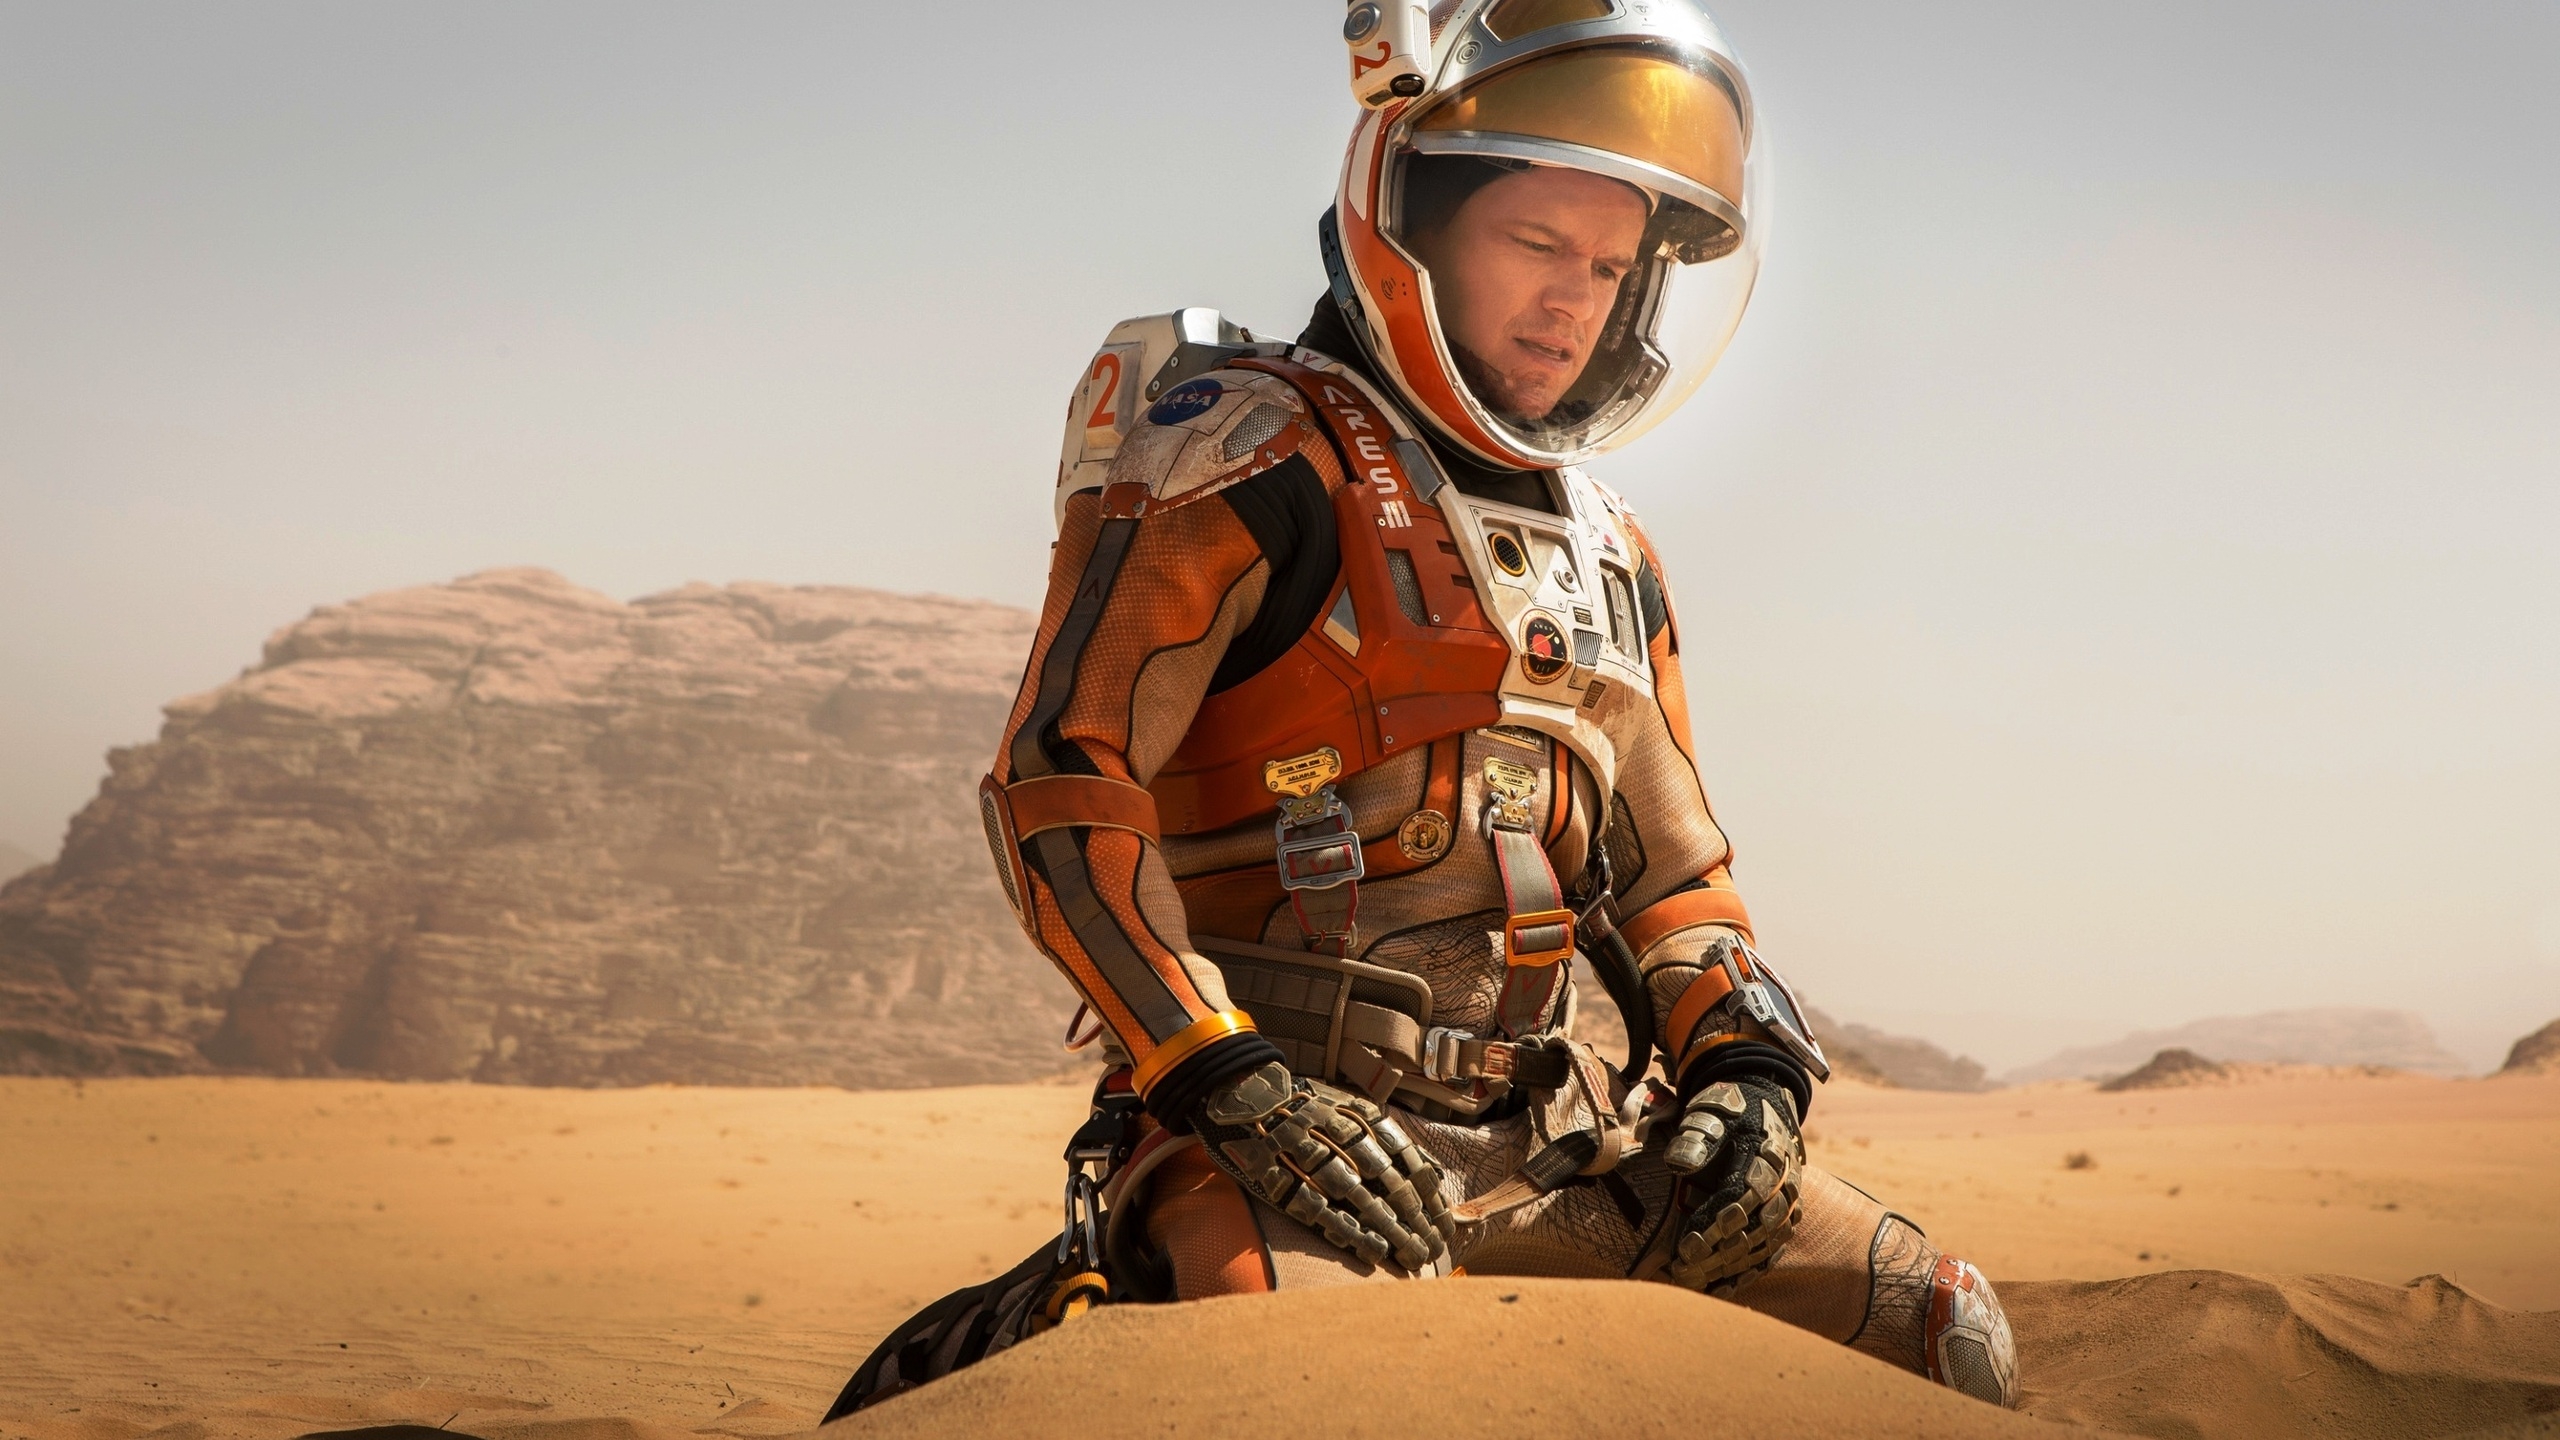 The Martian Matt Damon for 2560x1440 HDTV resolution